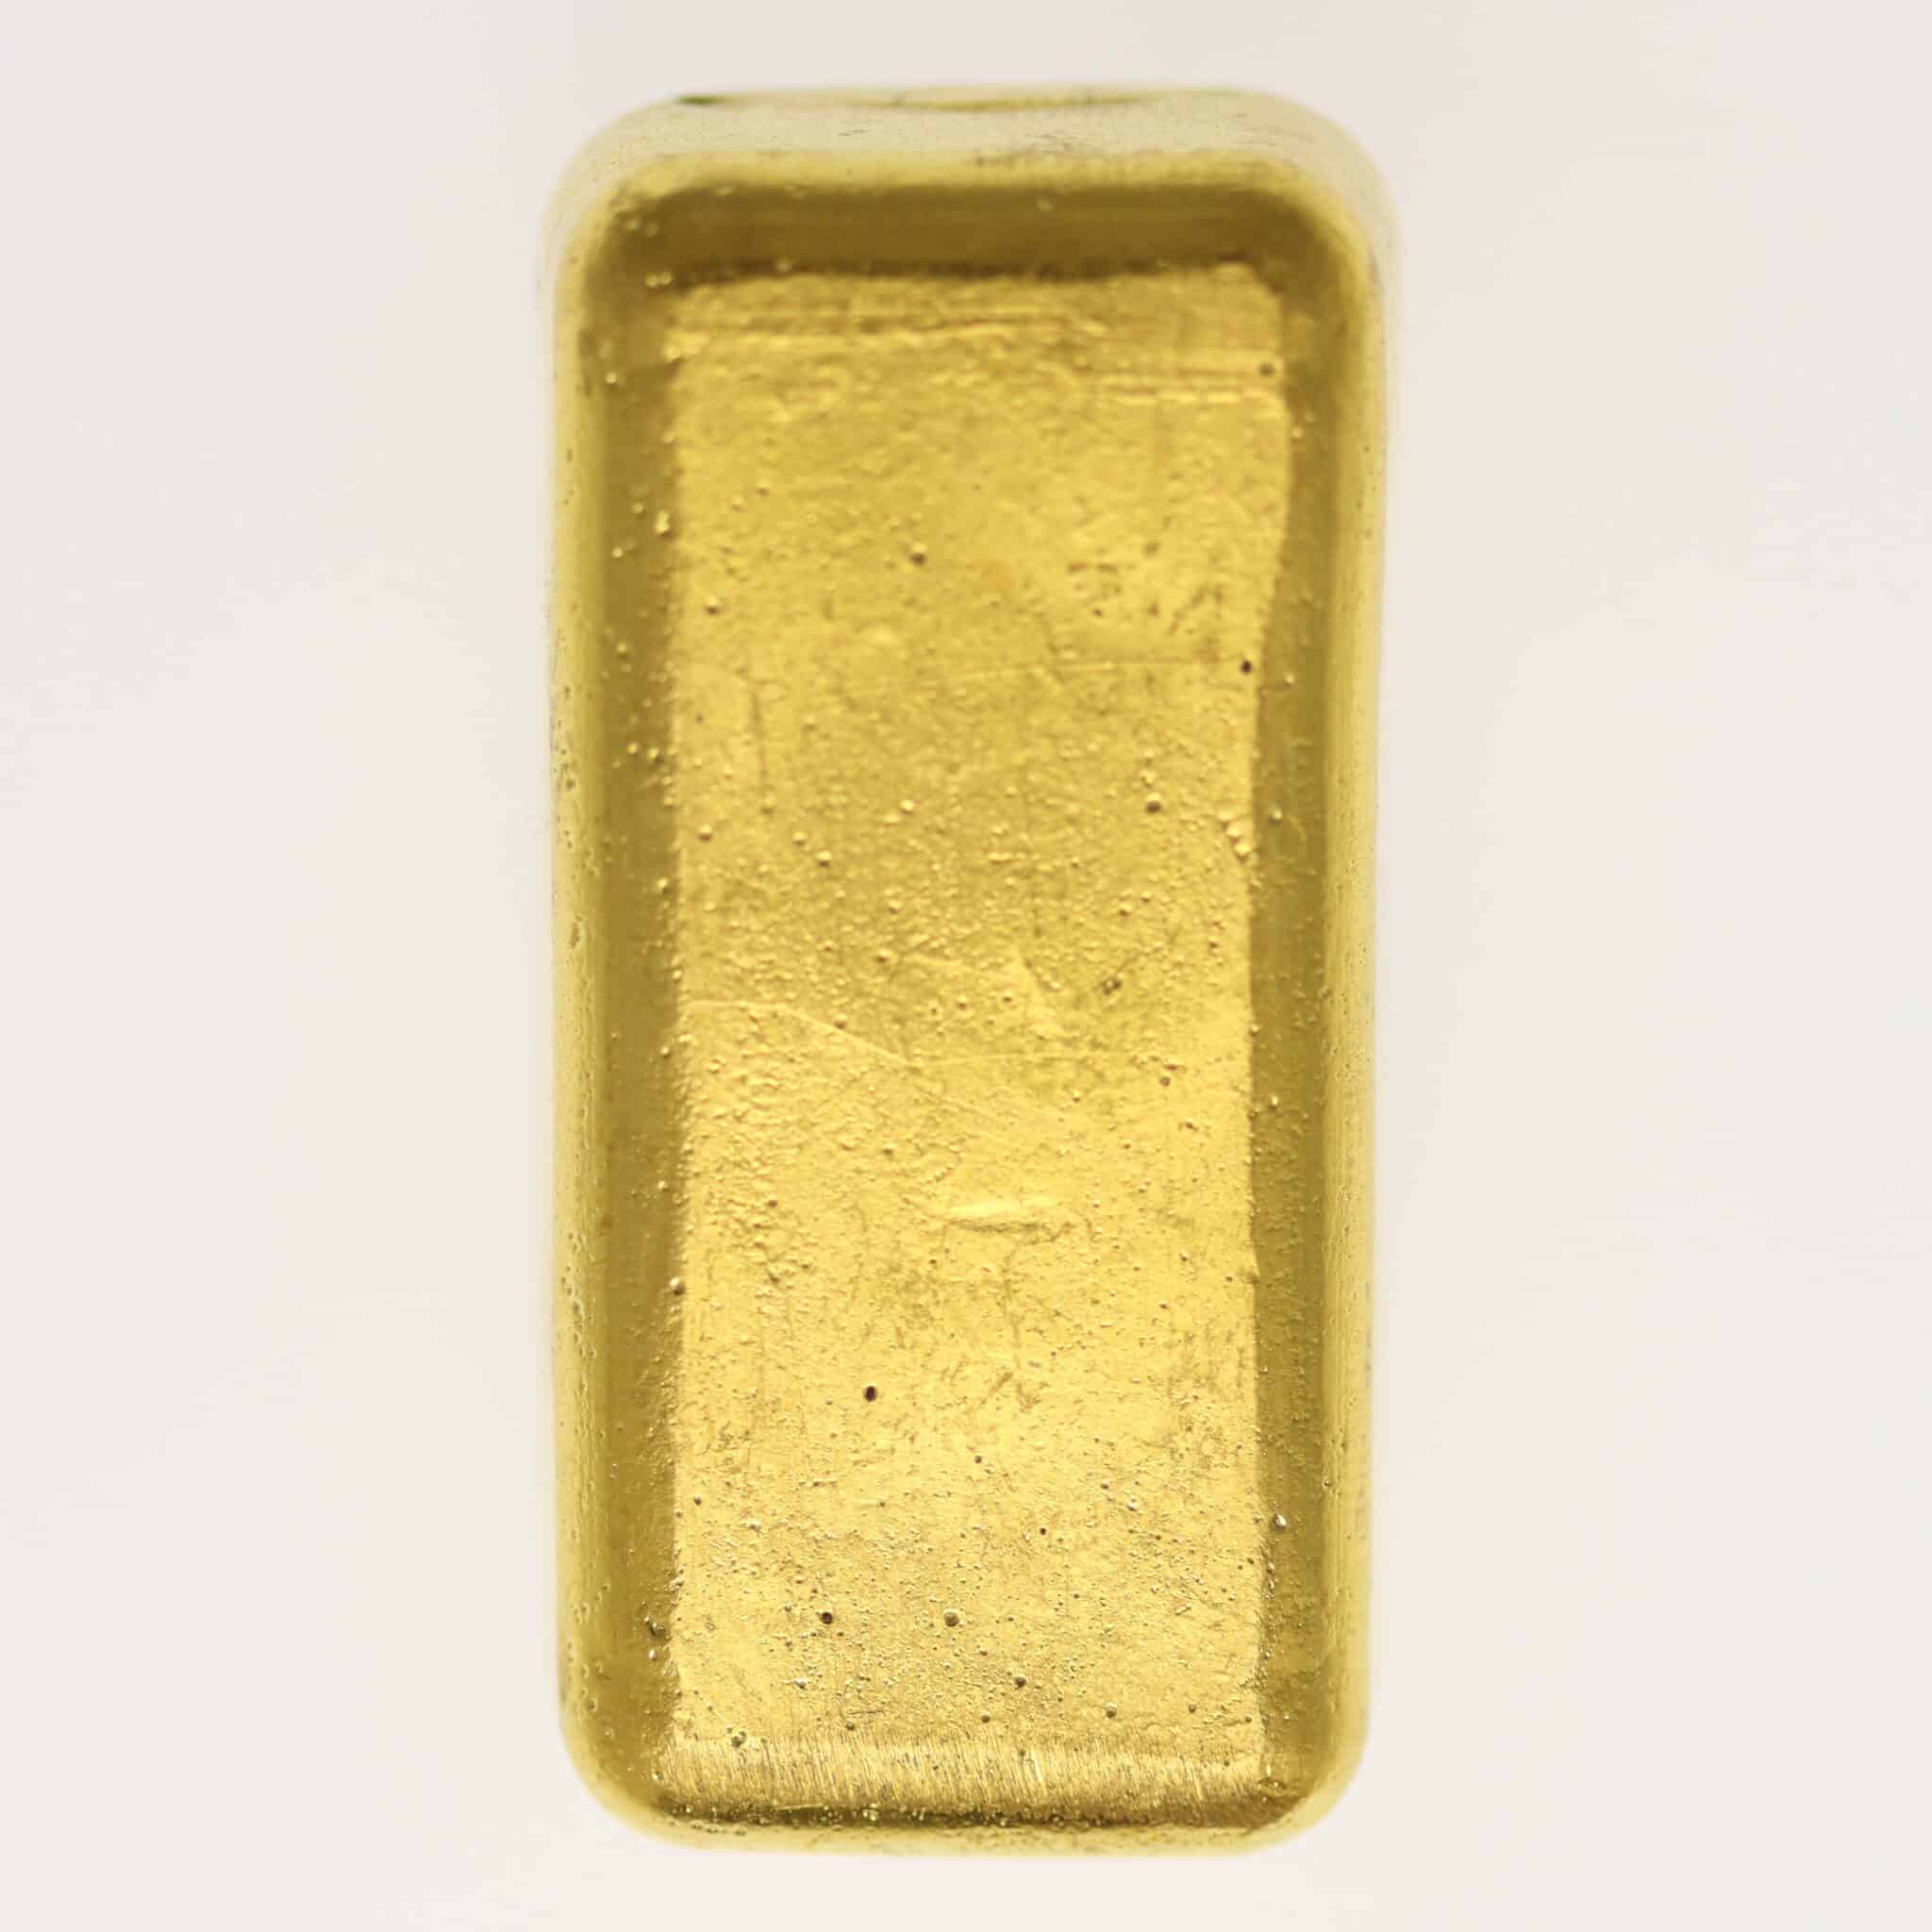 allgemein - Historische Goldbarren: Begehrtes Altgold erzählt die Geschichte des Goldhandels